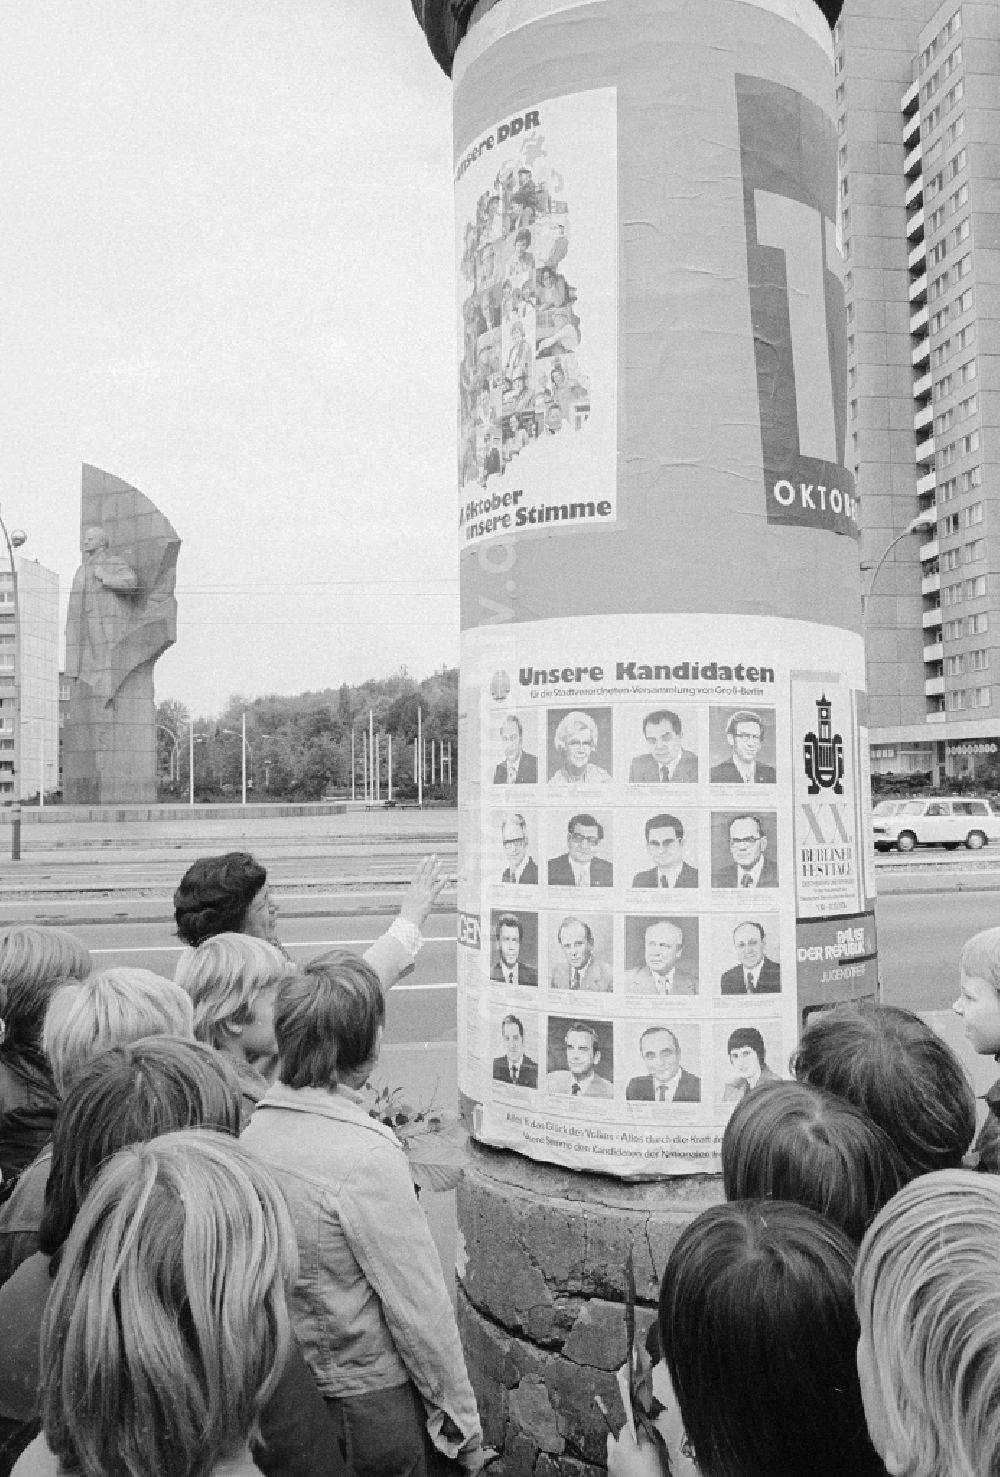 DDR-Fotoarchiv: Berlin - Litfaßsäule mit Wahlplakaten zur Wahl der 7. Volkskammer der DDR in Berlin, der ehemaligen Hauptstadt der DDR, Deutsche Demokratische Republik